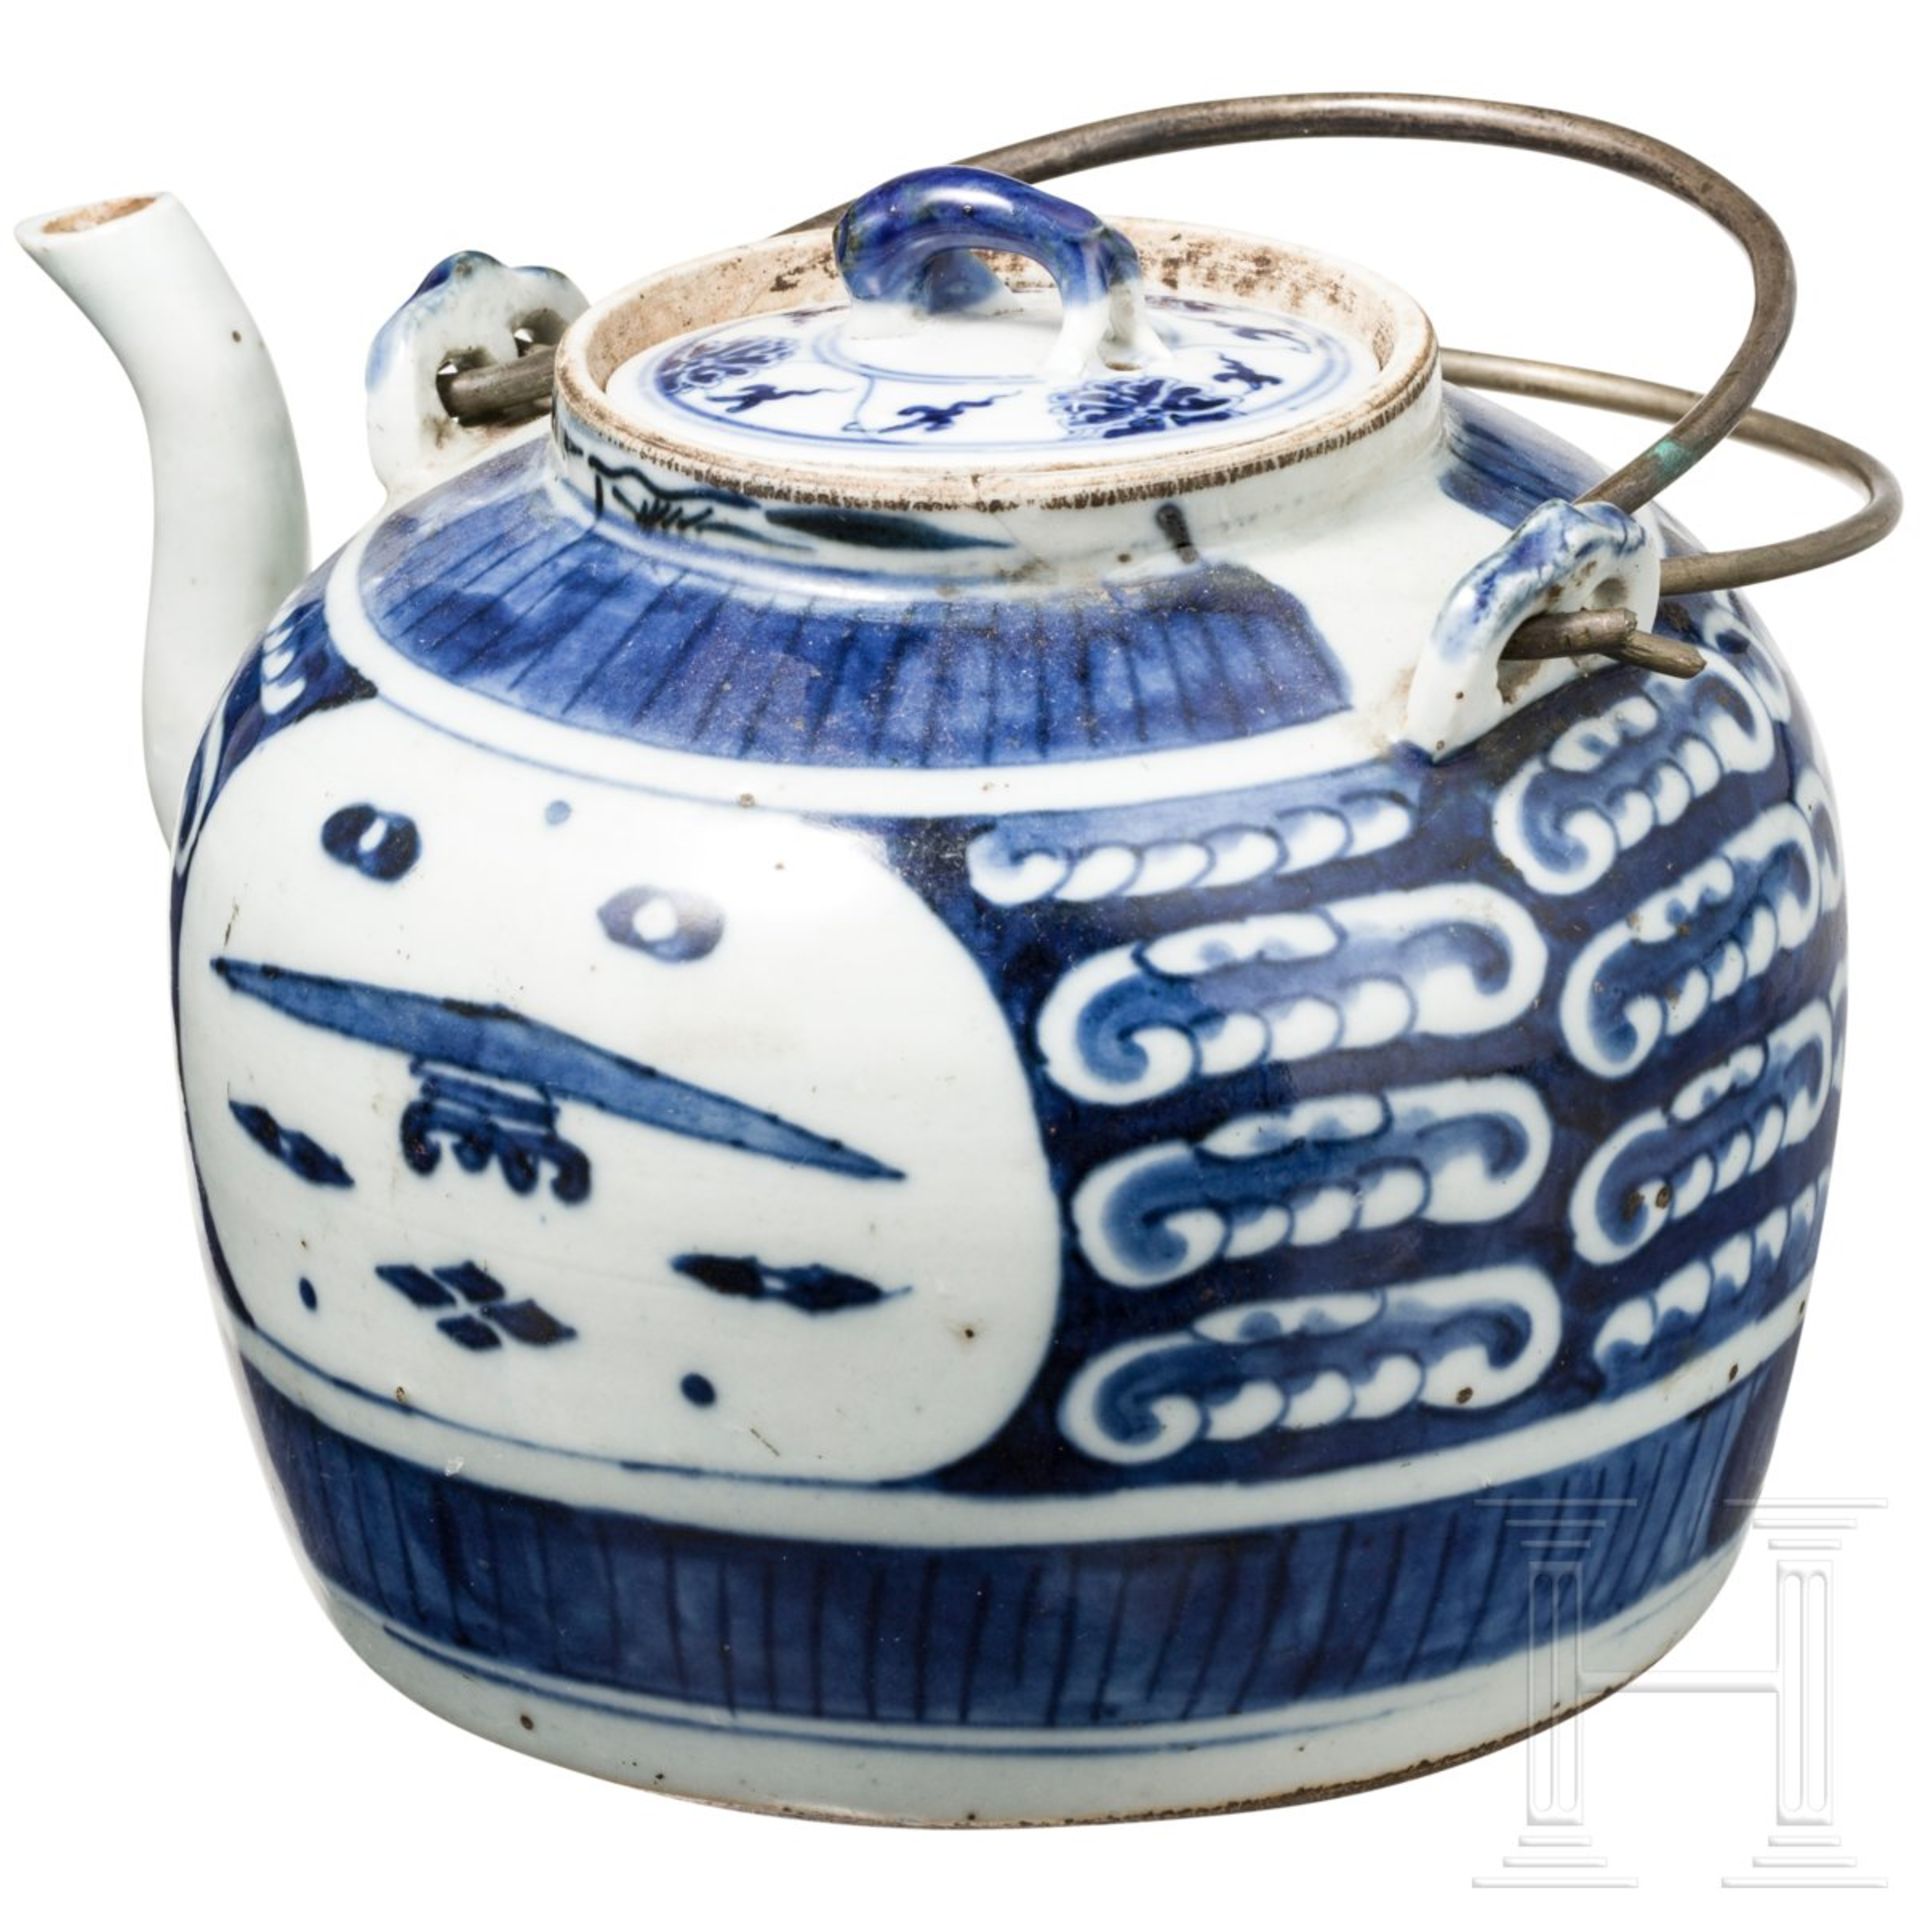 Blau-weiße Porzellan-Teekanne, China, 18. Jhdt. - Bild 3 aus 3